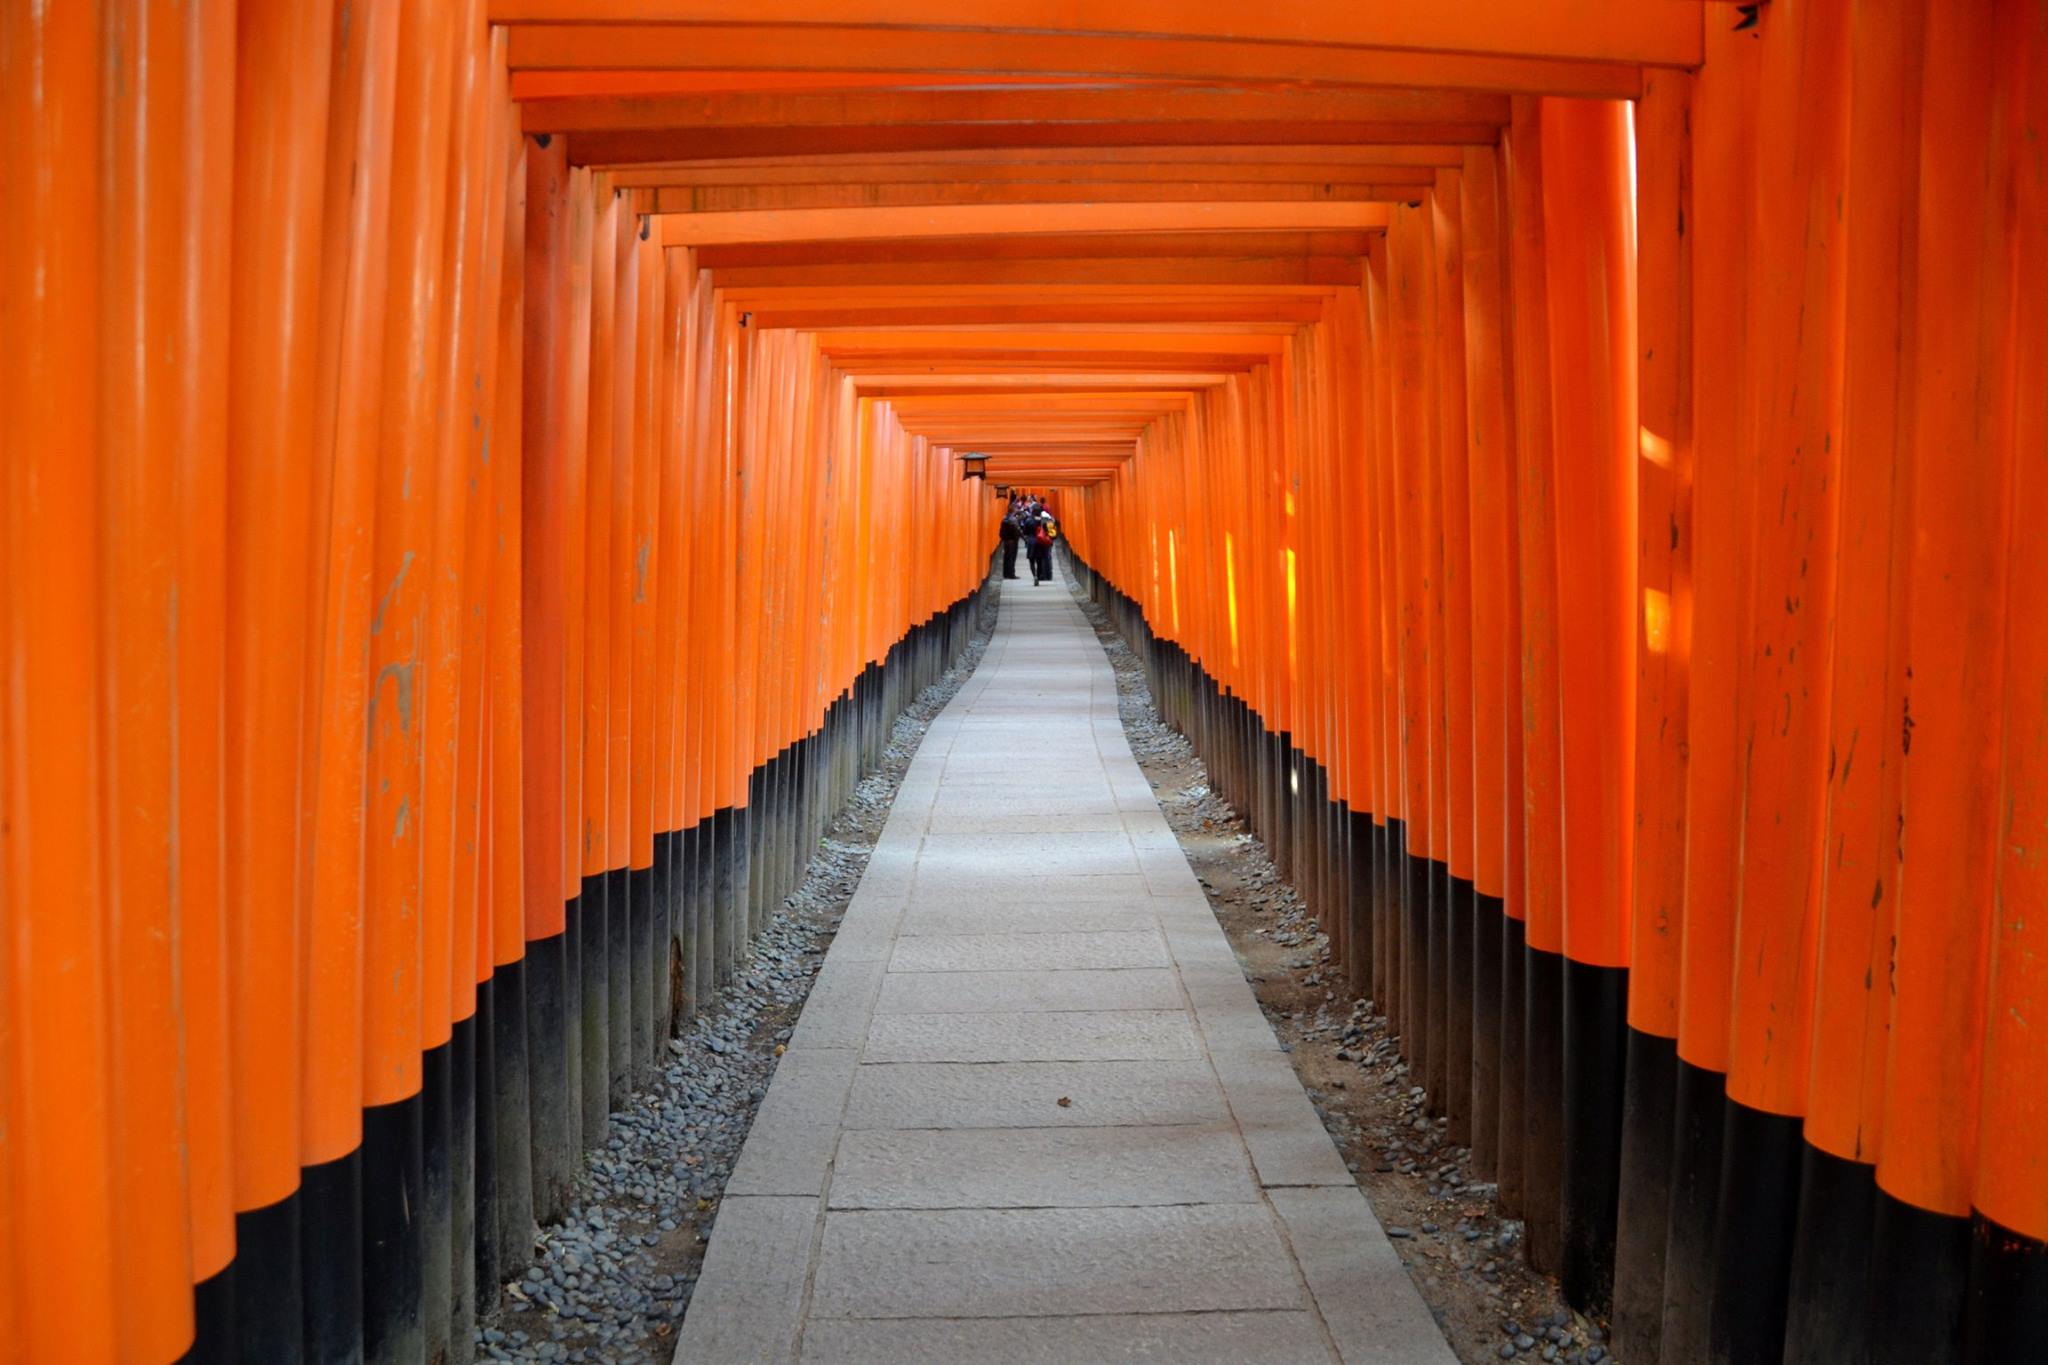 The orange gates of the Fushimi Inari Shrine. Photo: Marta Marinelli.